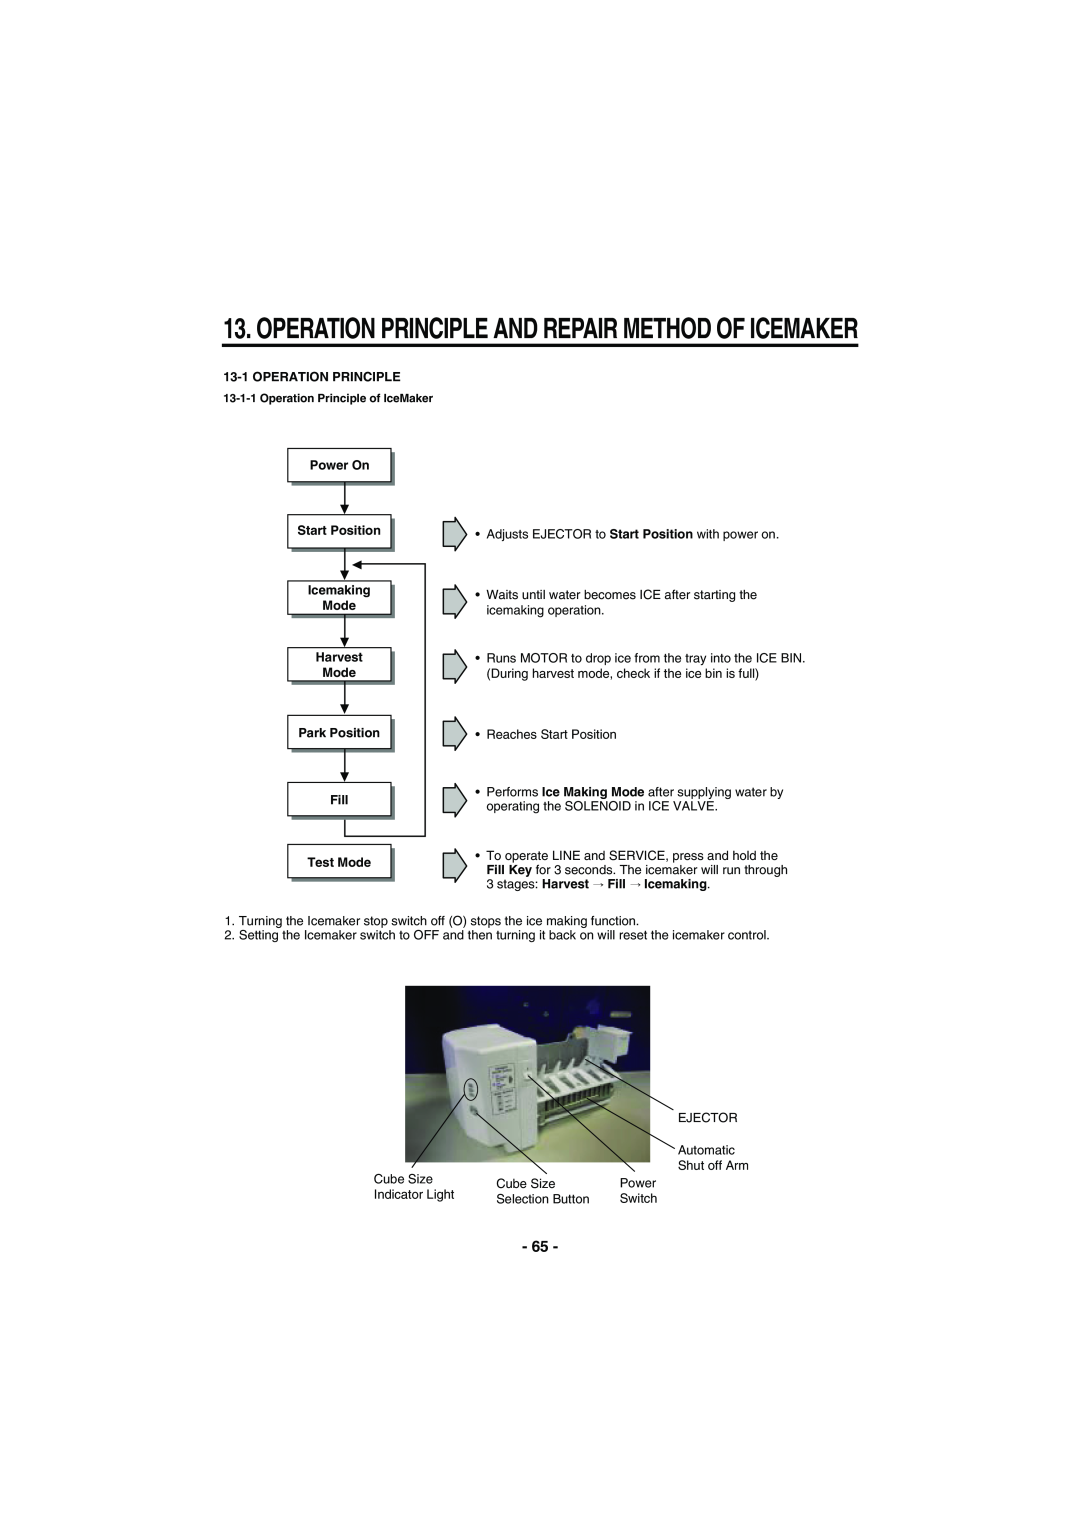 Kenmore 795-71022.010 Operation Principle And Repair Method Of Icemaker, Operation Principle of IceMaker, Icemaking, Fill 